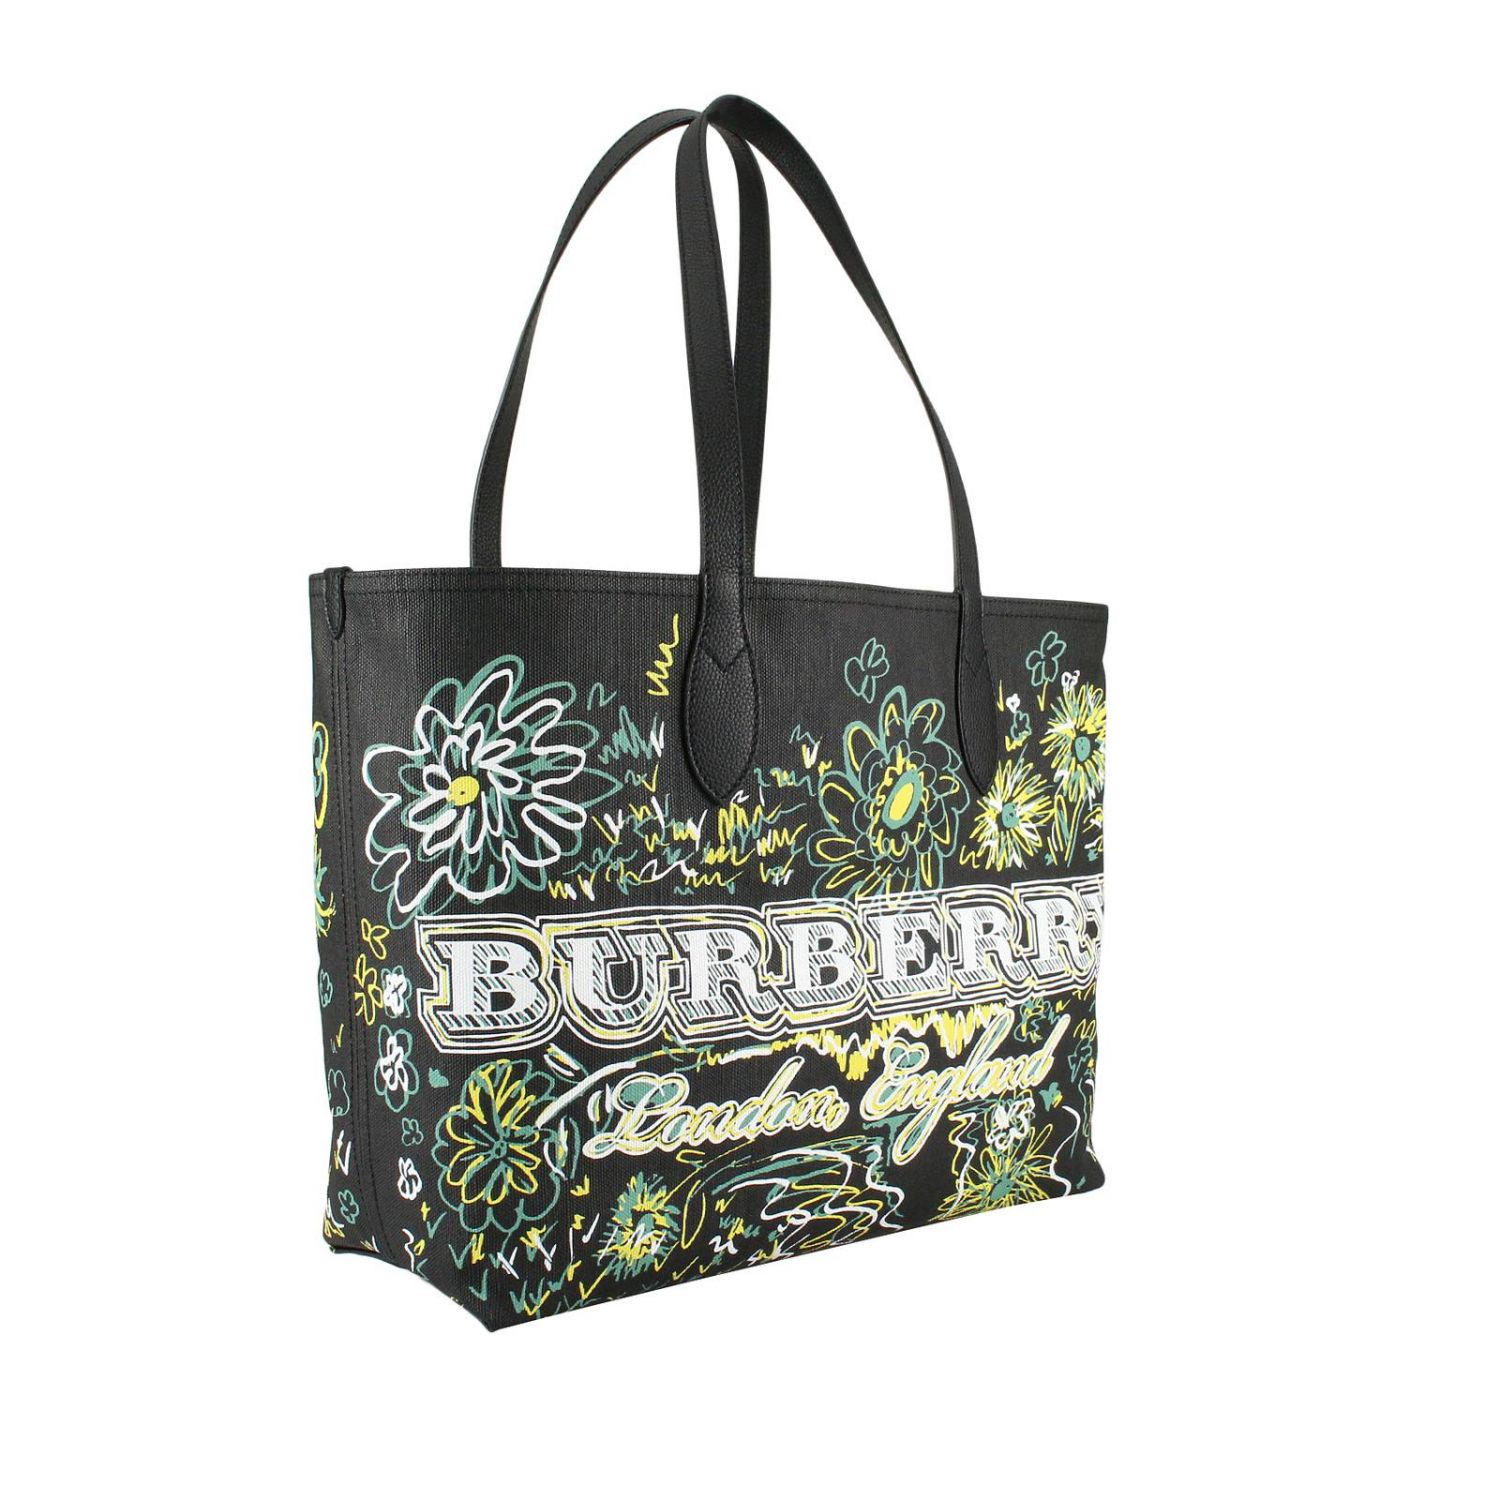 Burberry Outlet: Shoulder bag women - Black | Shoulder Bag Burberry ...